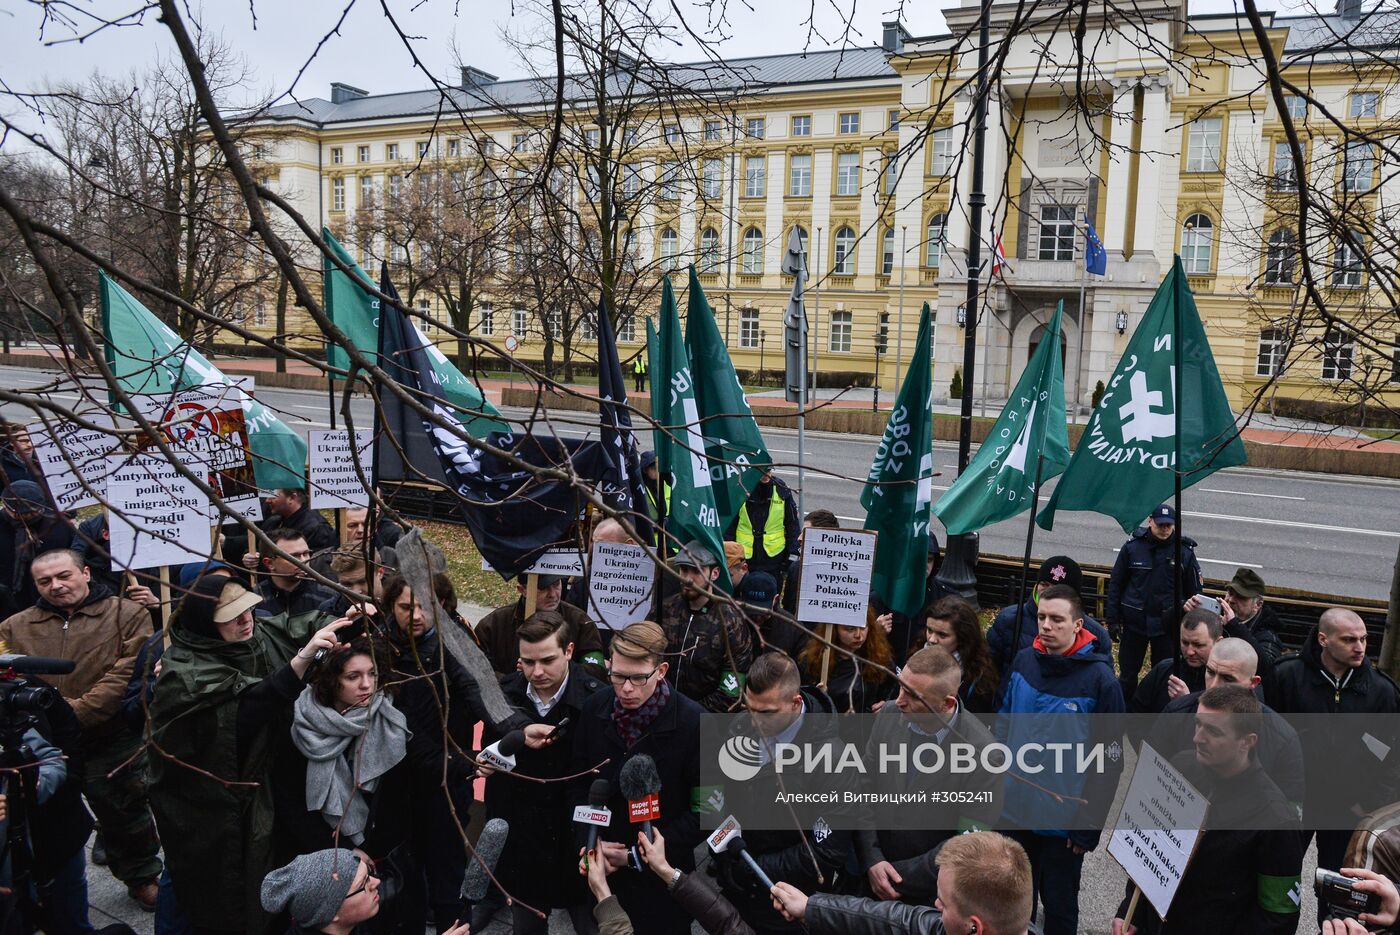 Митинг в Варшаве против возросшего числа украинских мигрантов